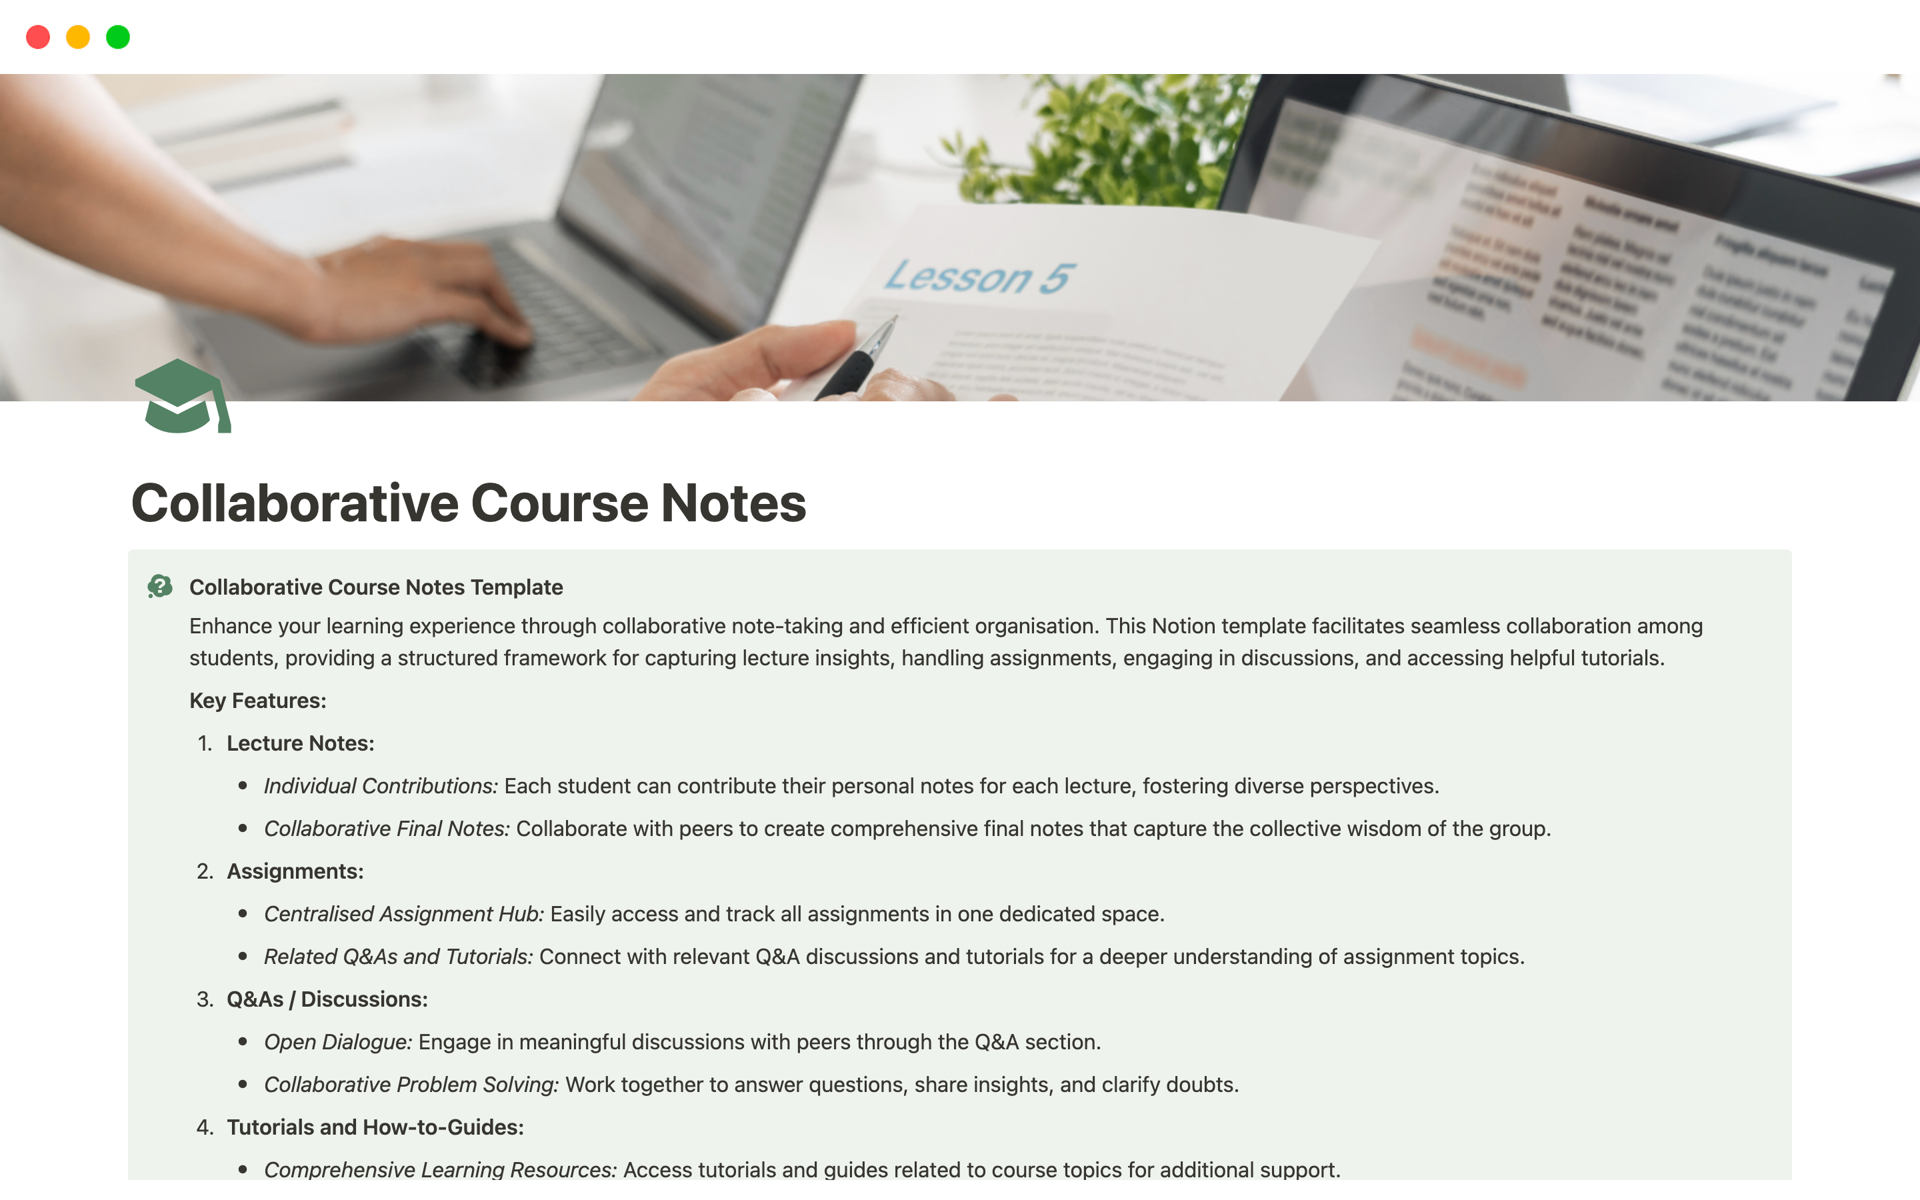 Vista previa de una plantilla para Collaborative Course Notes